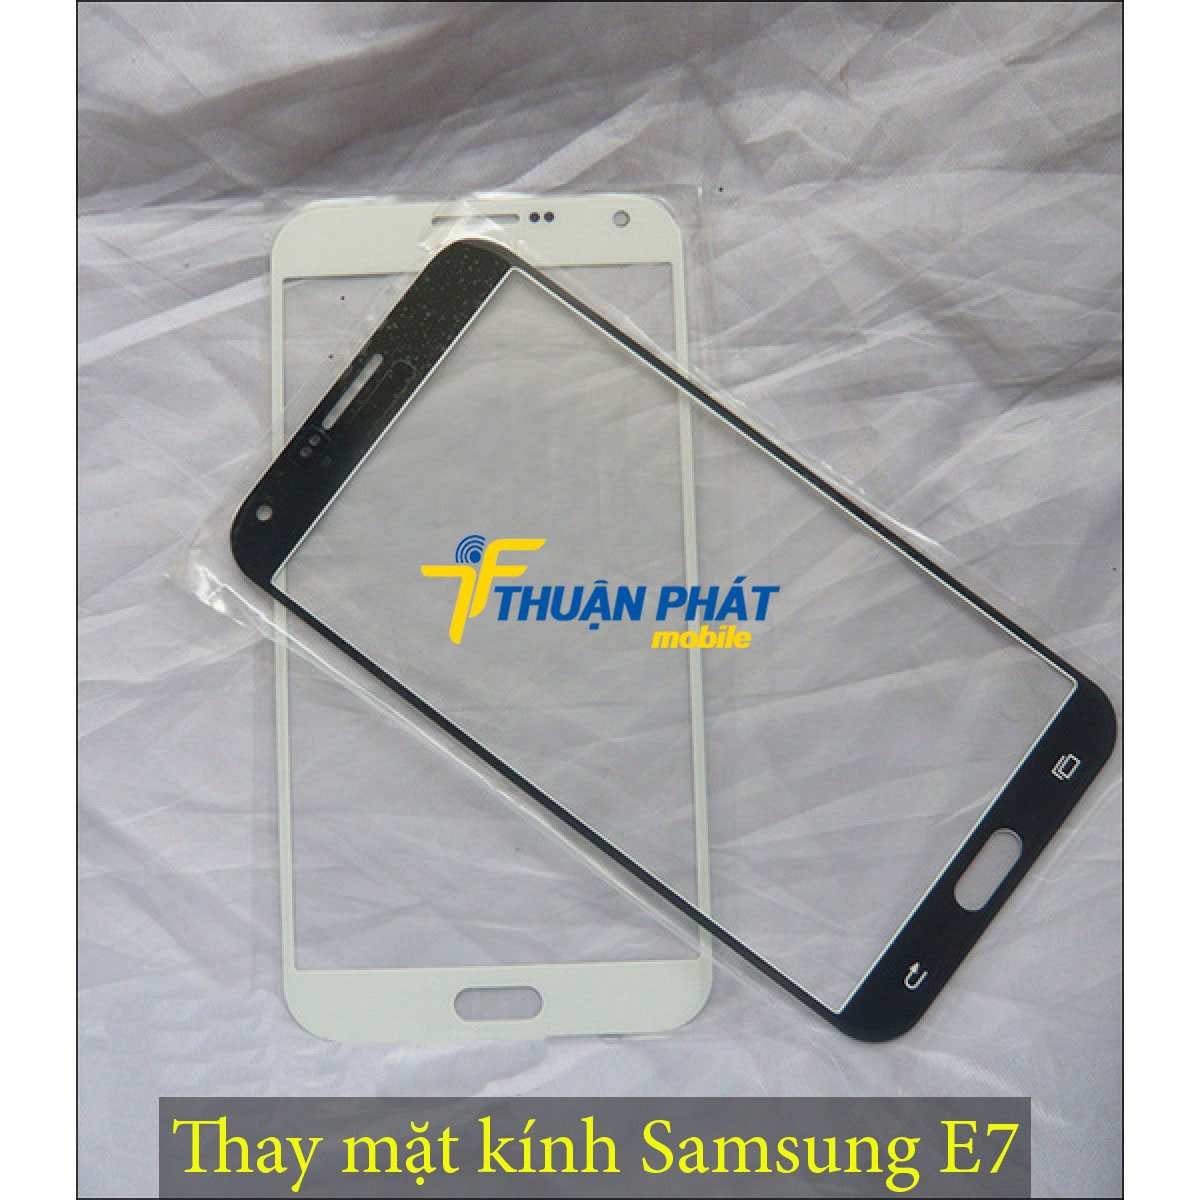 Thay mặt kính Samsung E7 tại Thuận Phát Mobile